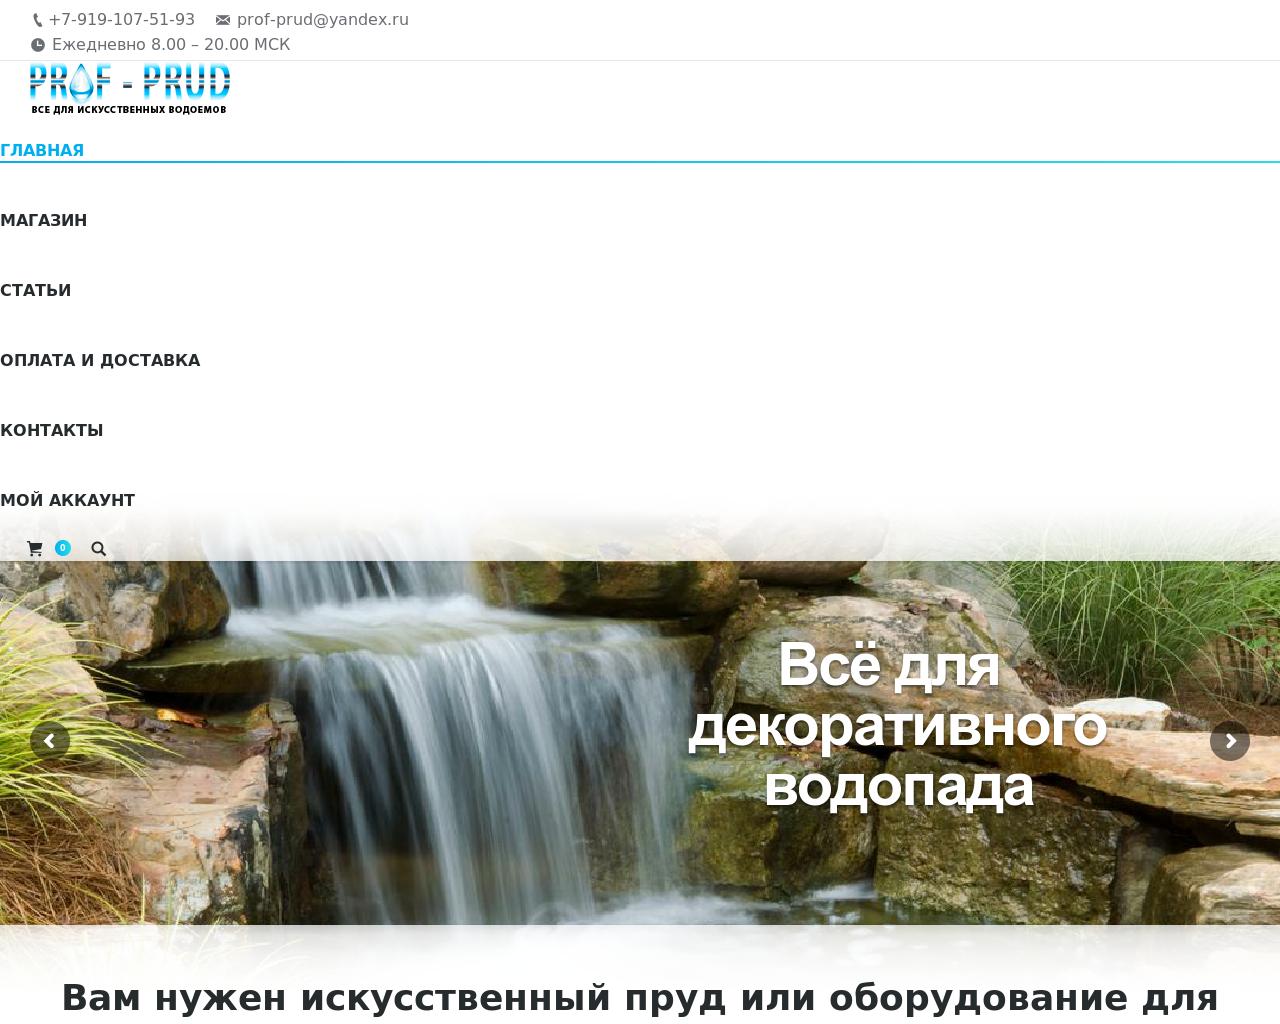 Изображение сайта prof-prud.ru в разрешении 1280x1024